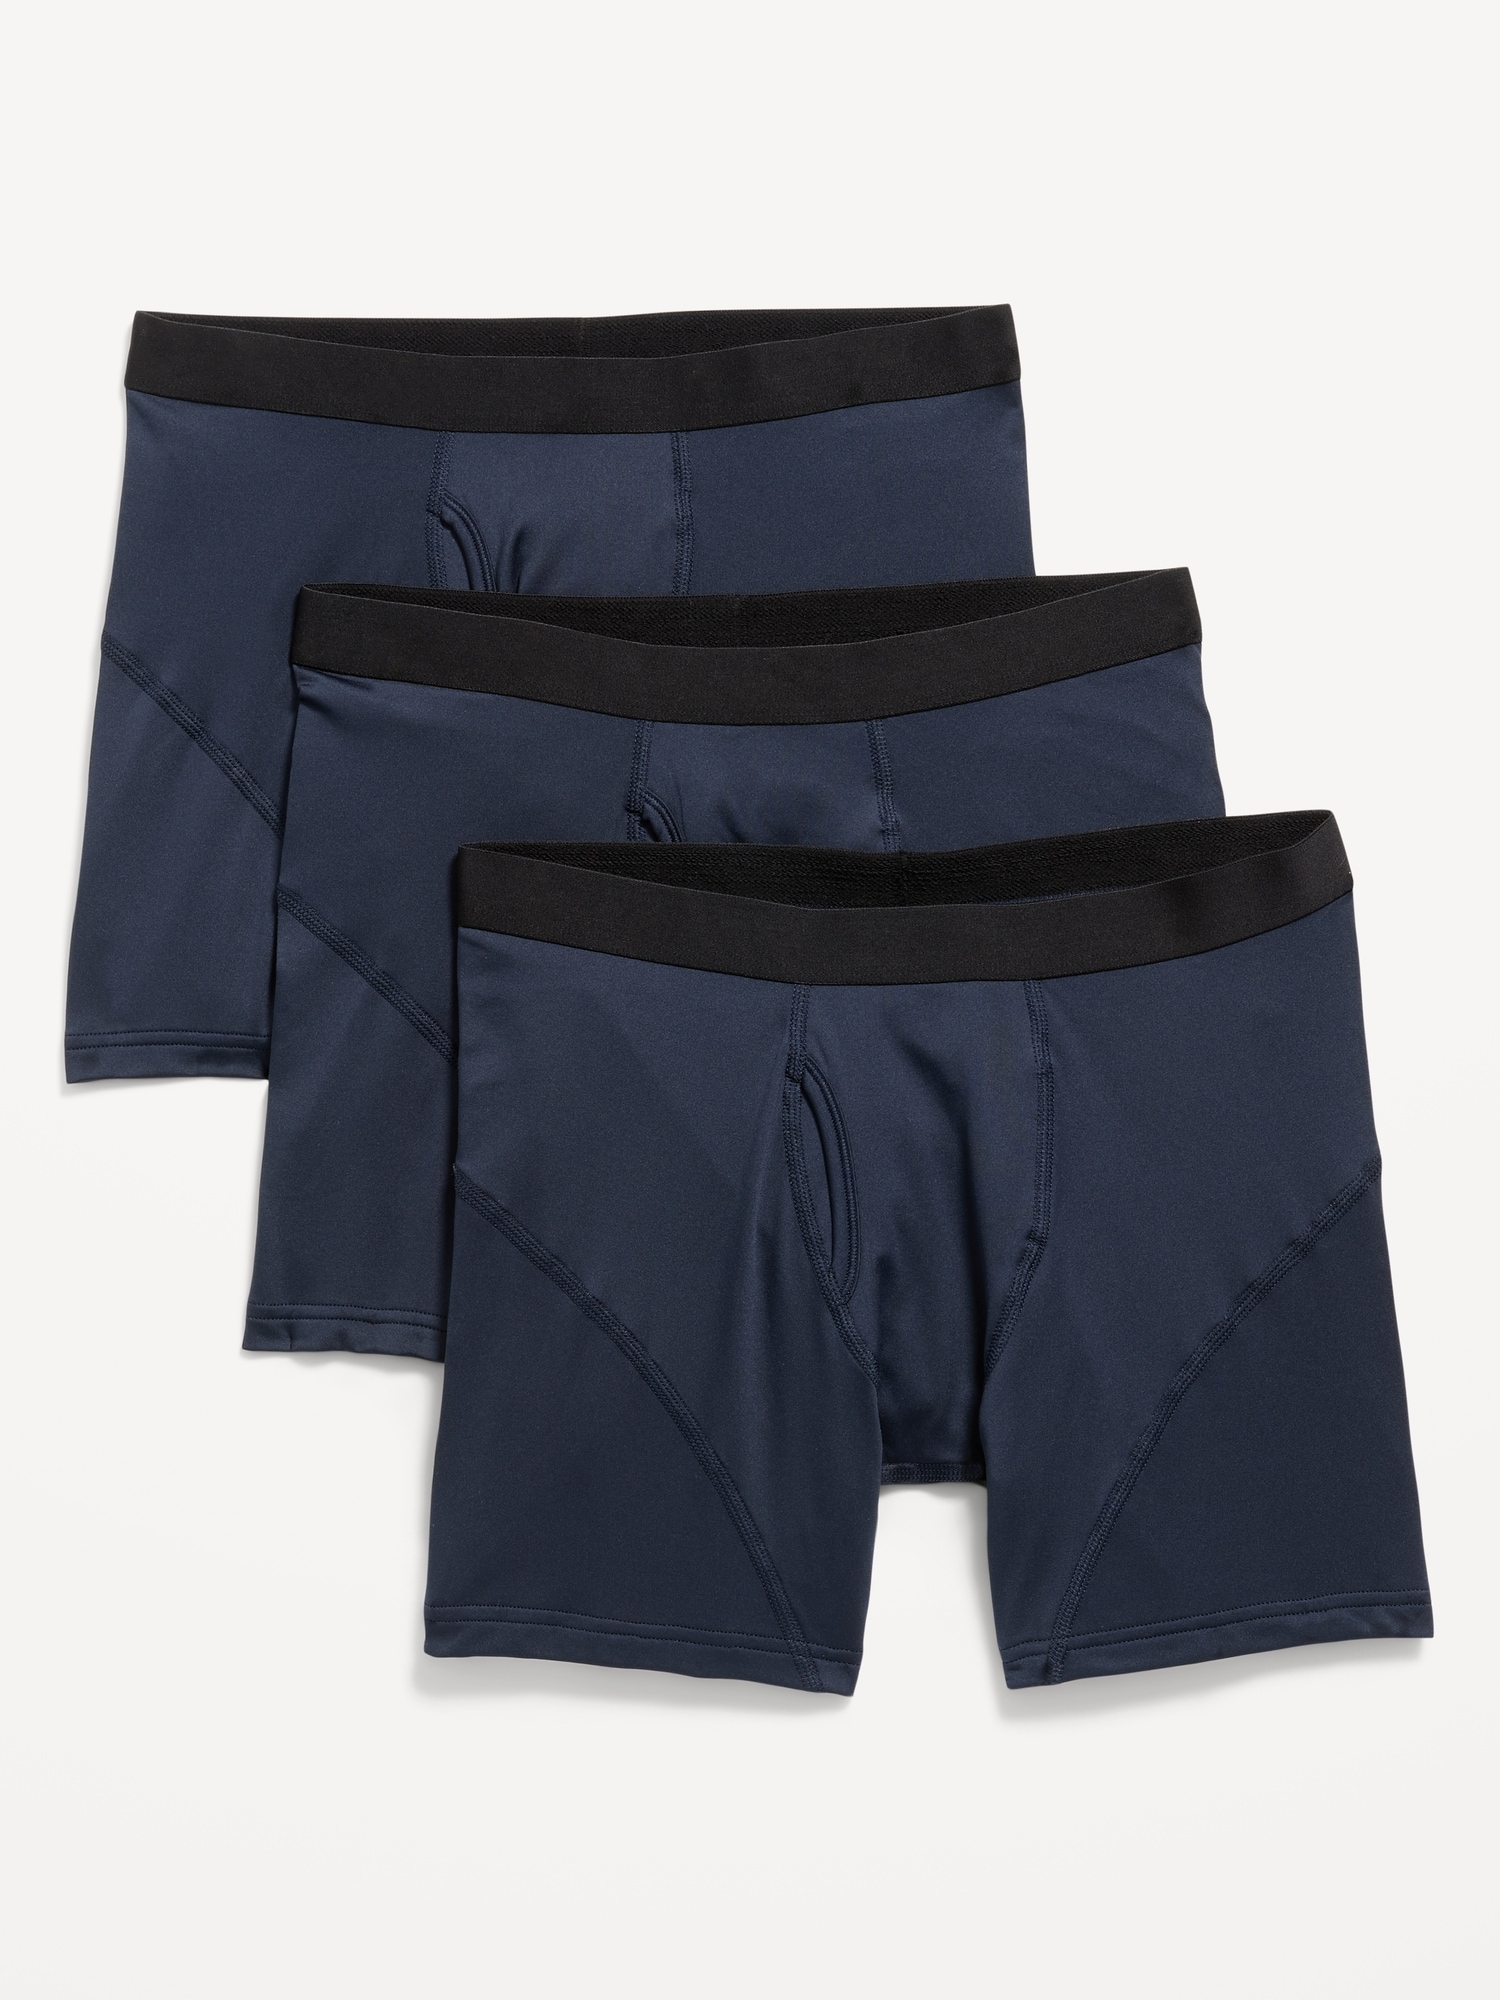 Go-Dry Cool Performance Boxer-Briefs Underwear 3-Pack -- 5-inch inseam ...